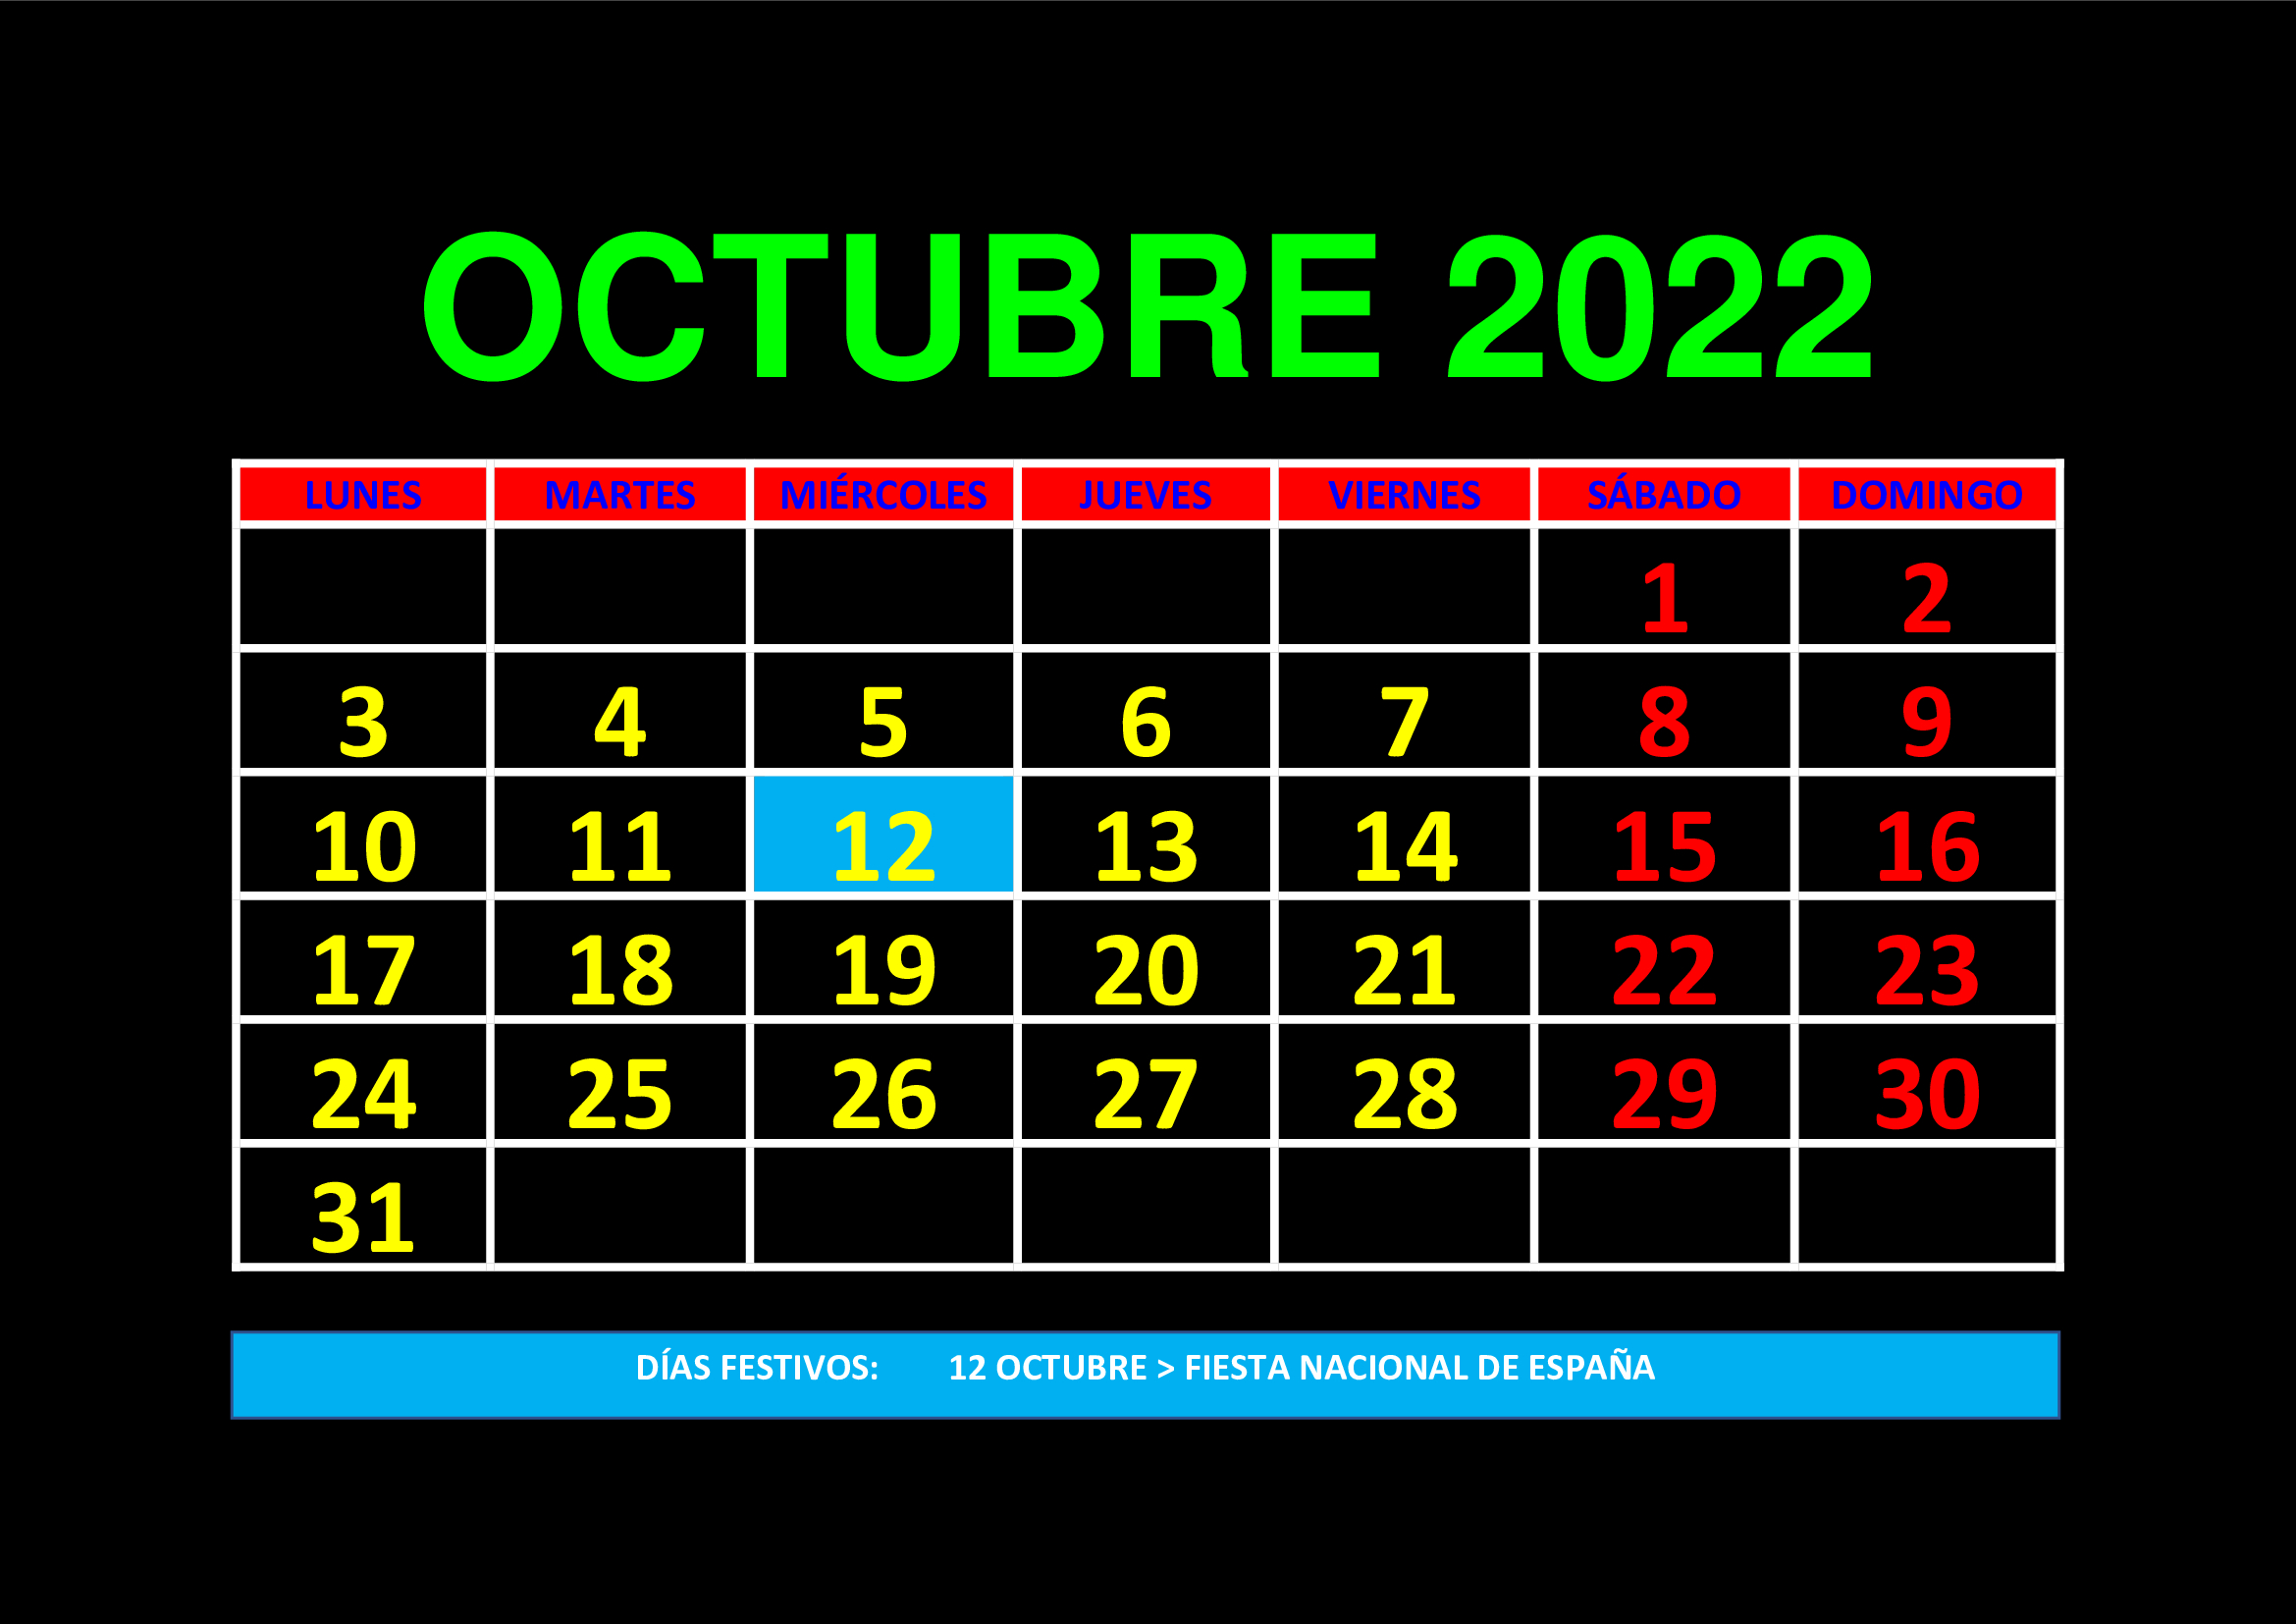 La imagen muestra el mes de octubre de 2022